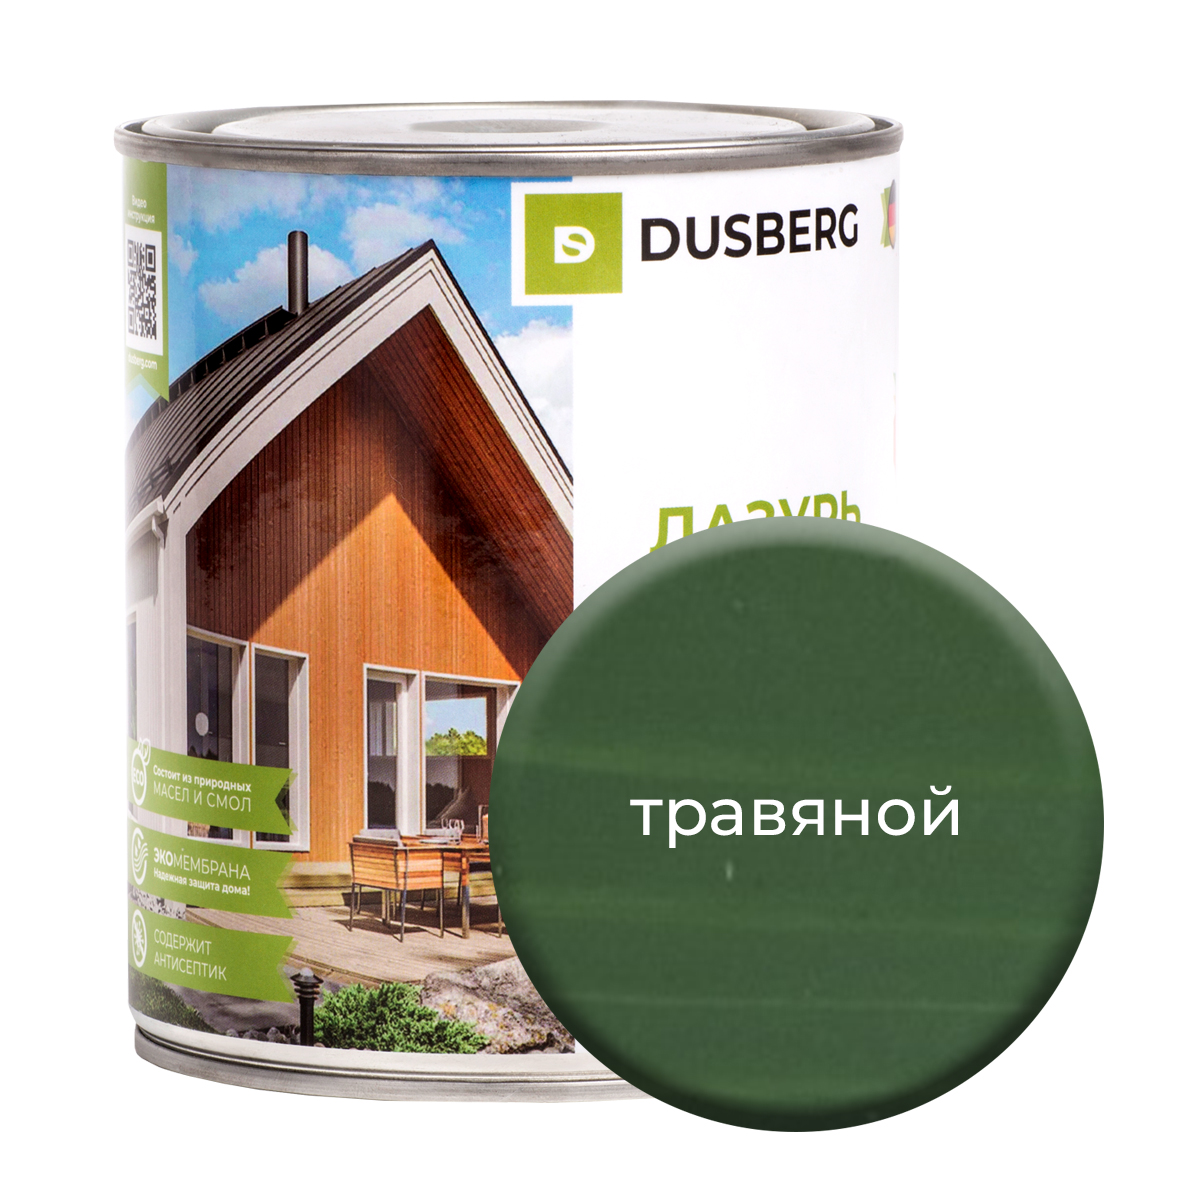 Лазурь Dusberg для дерева 750 мл Травяной чай травяной biopractika 14 day detox очищение организма 14 пир